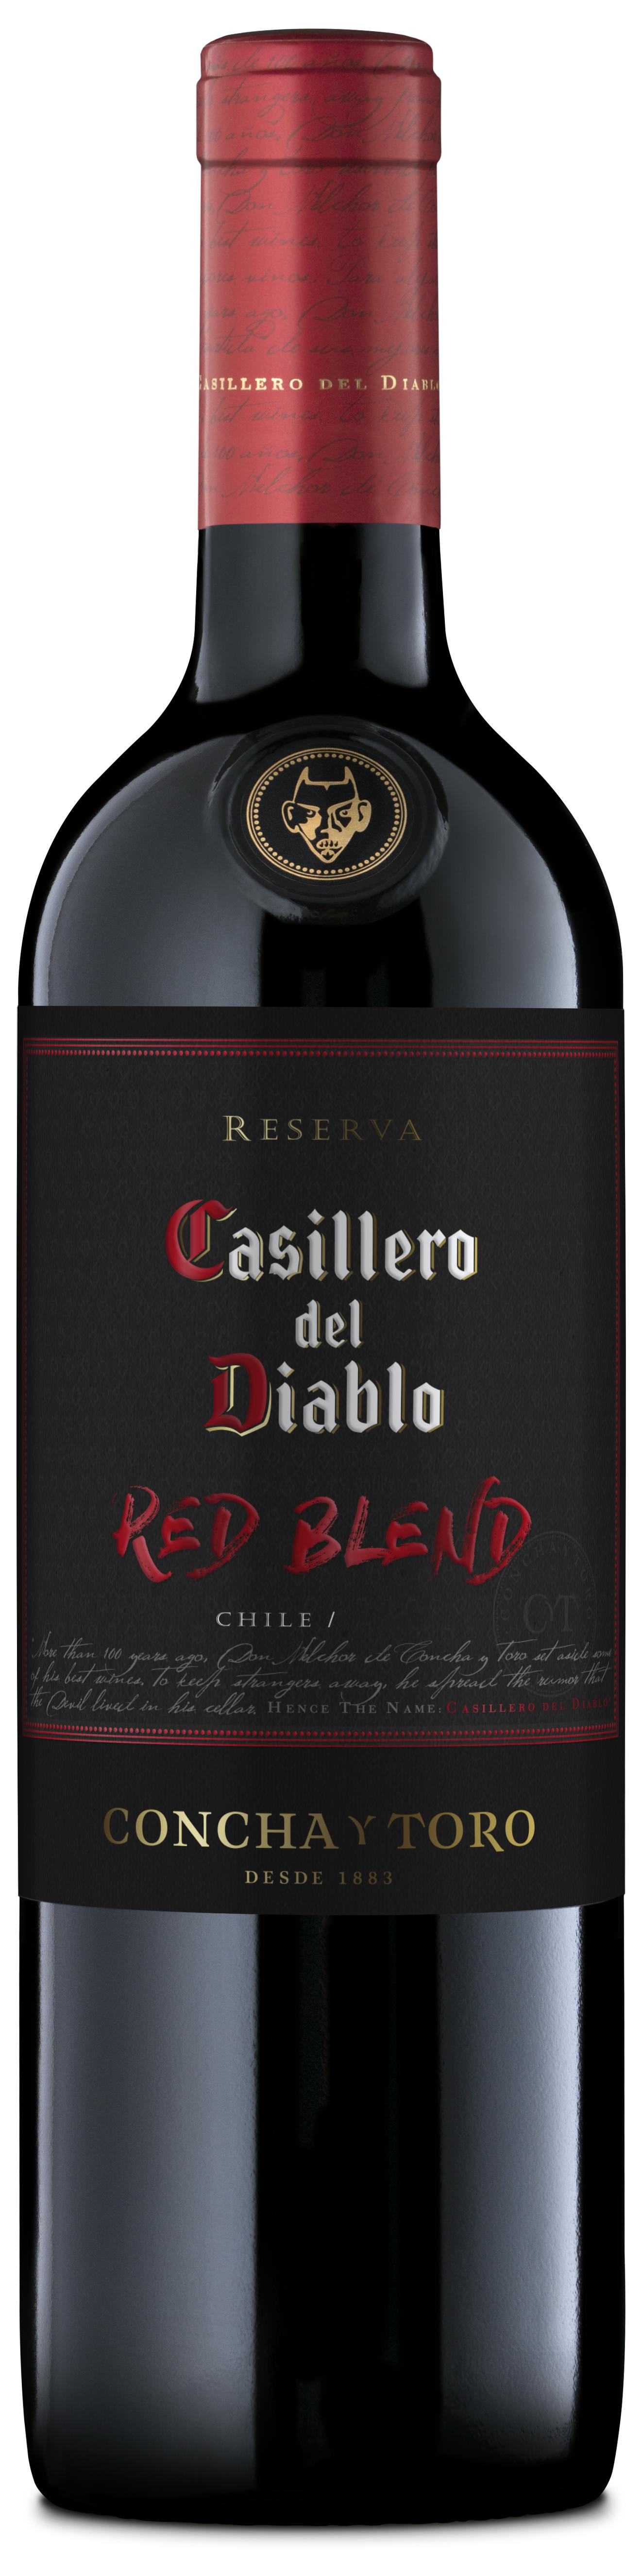 Casillero del Red - The Wine